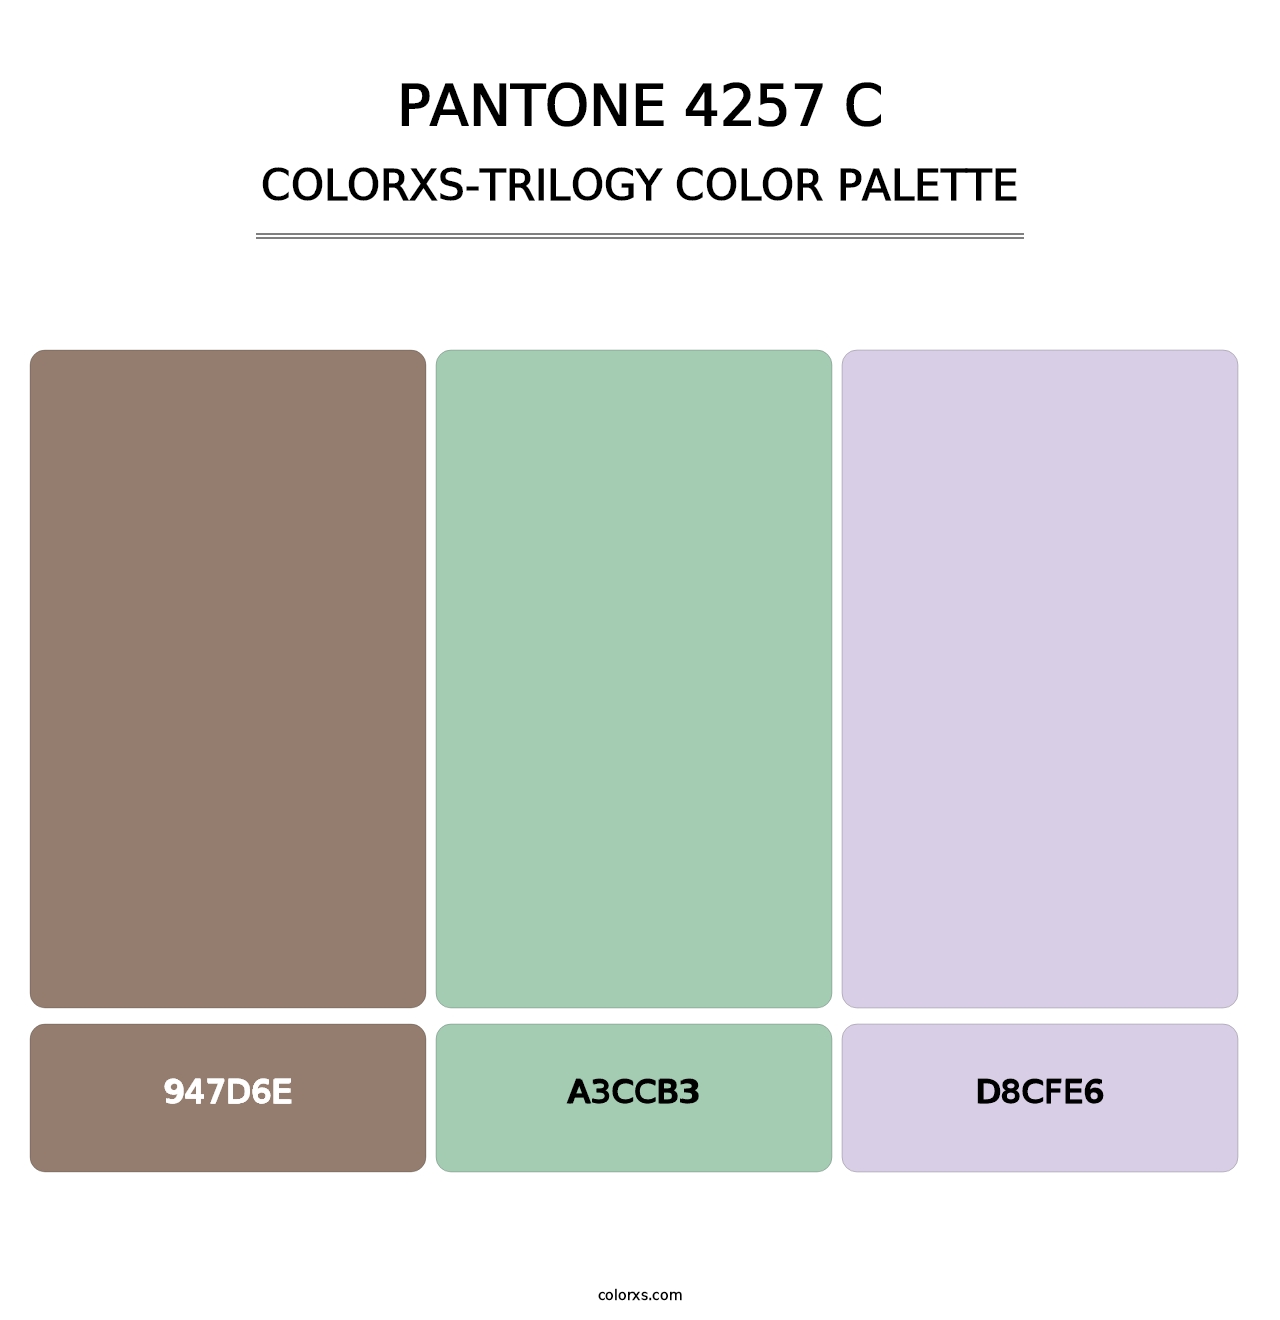 PANTONE 4257 C - Colorxs Trilogy Palette